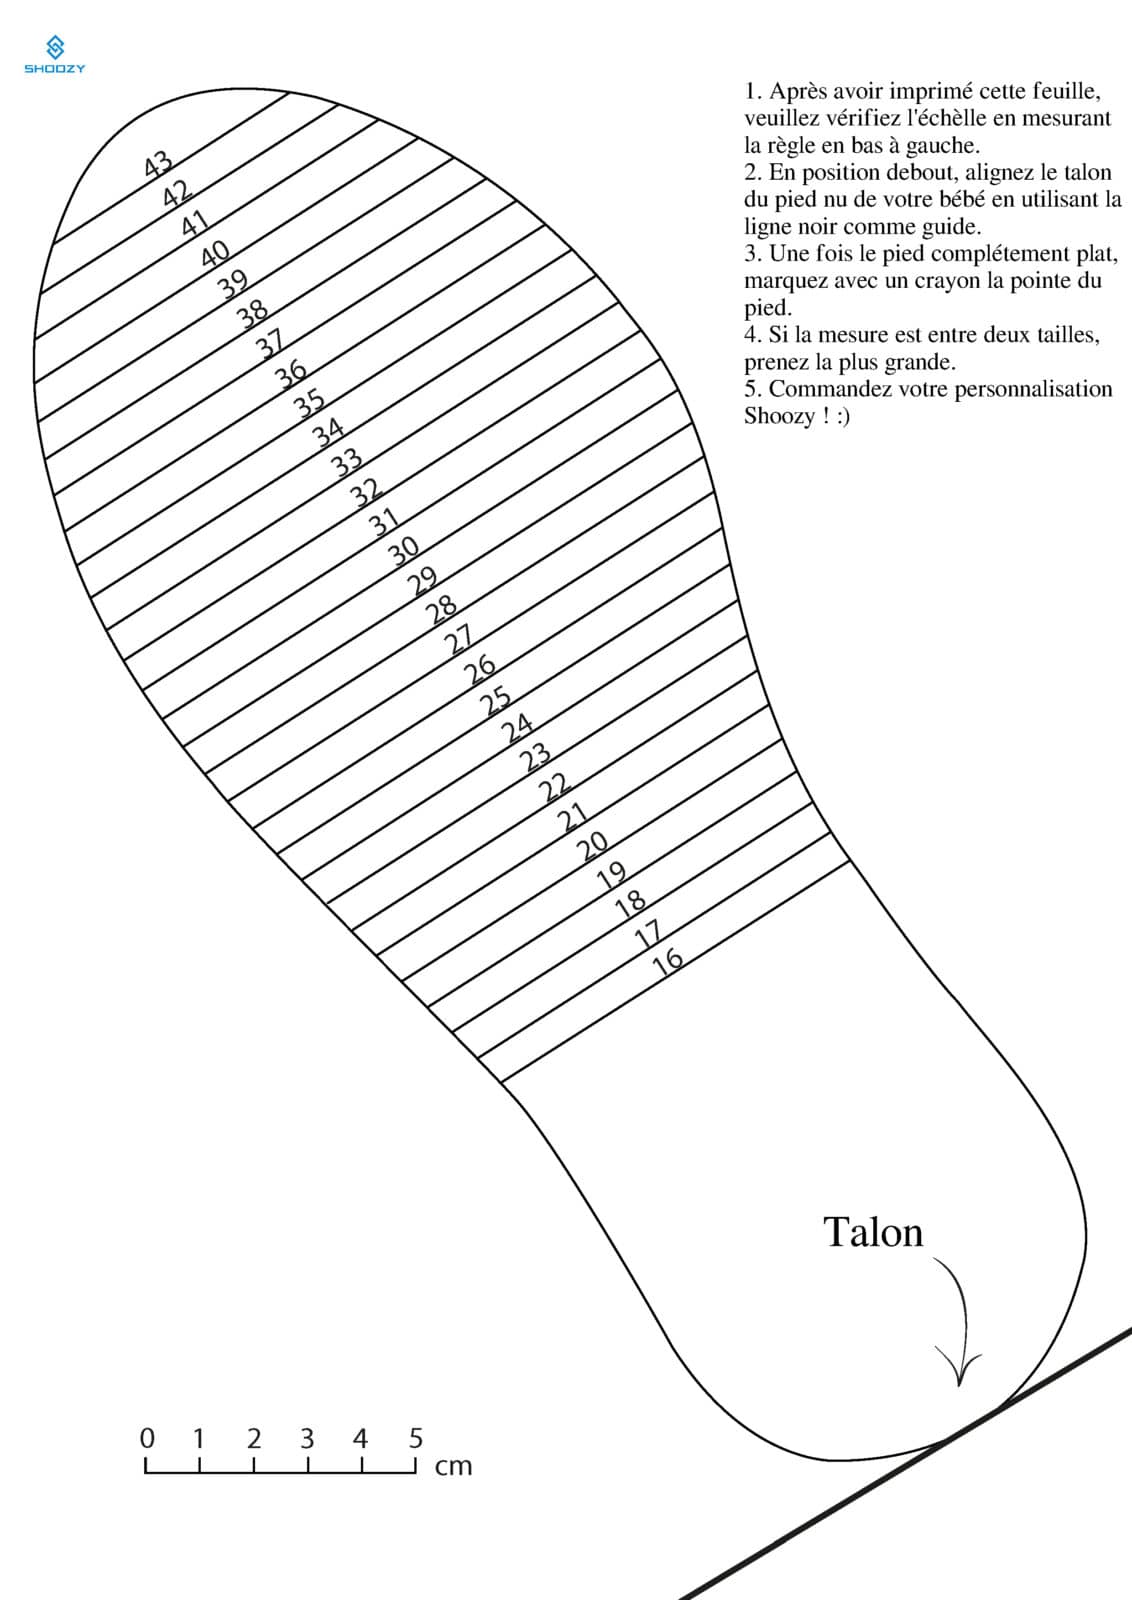 Le guide des pointures de chaussures pour enfants